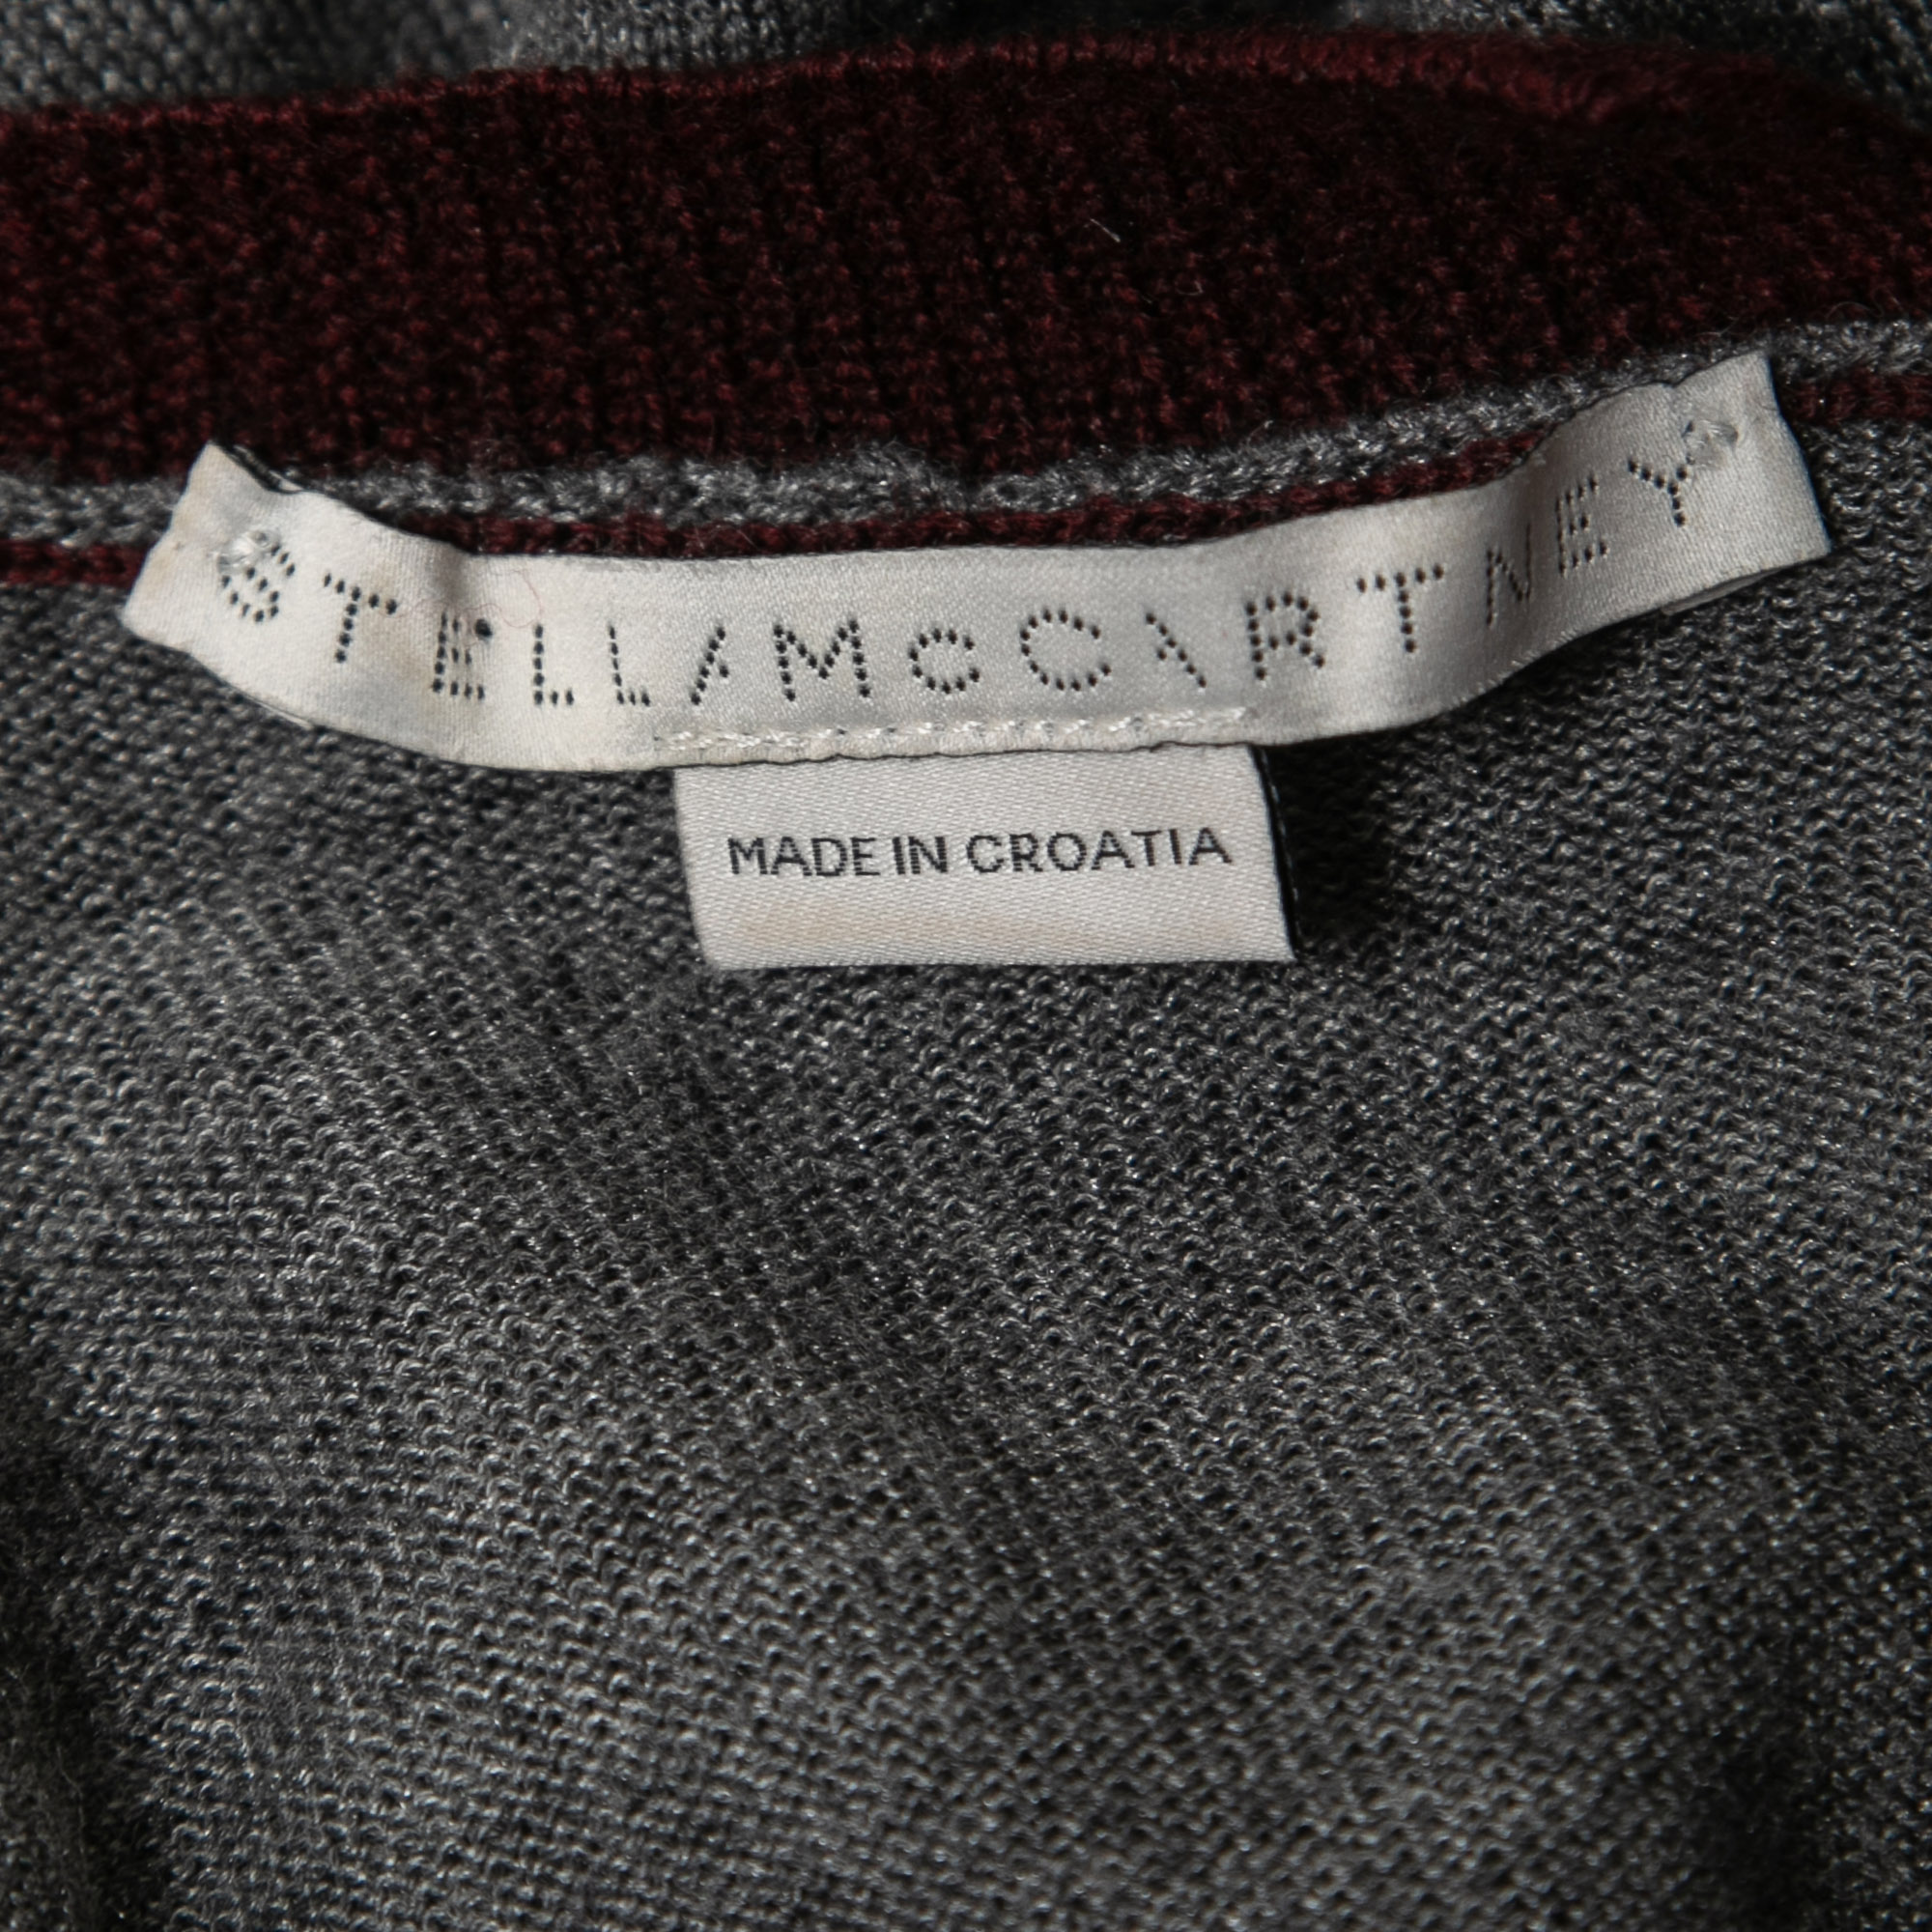 Stella McCartney Grey/Burgundy Wool Knit Jumper S